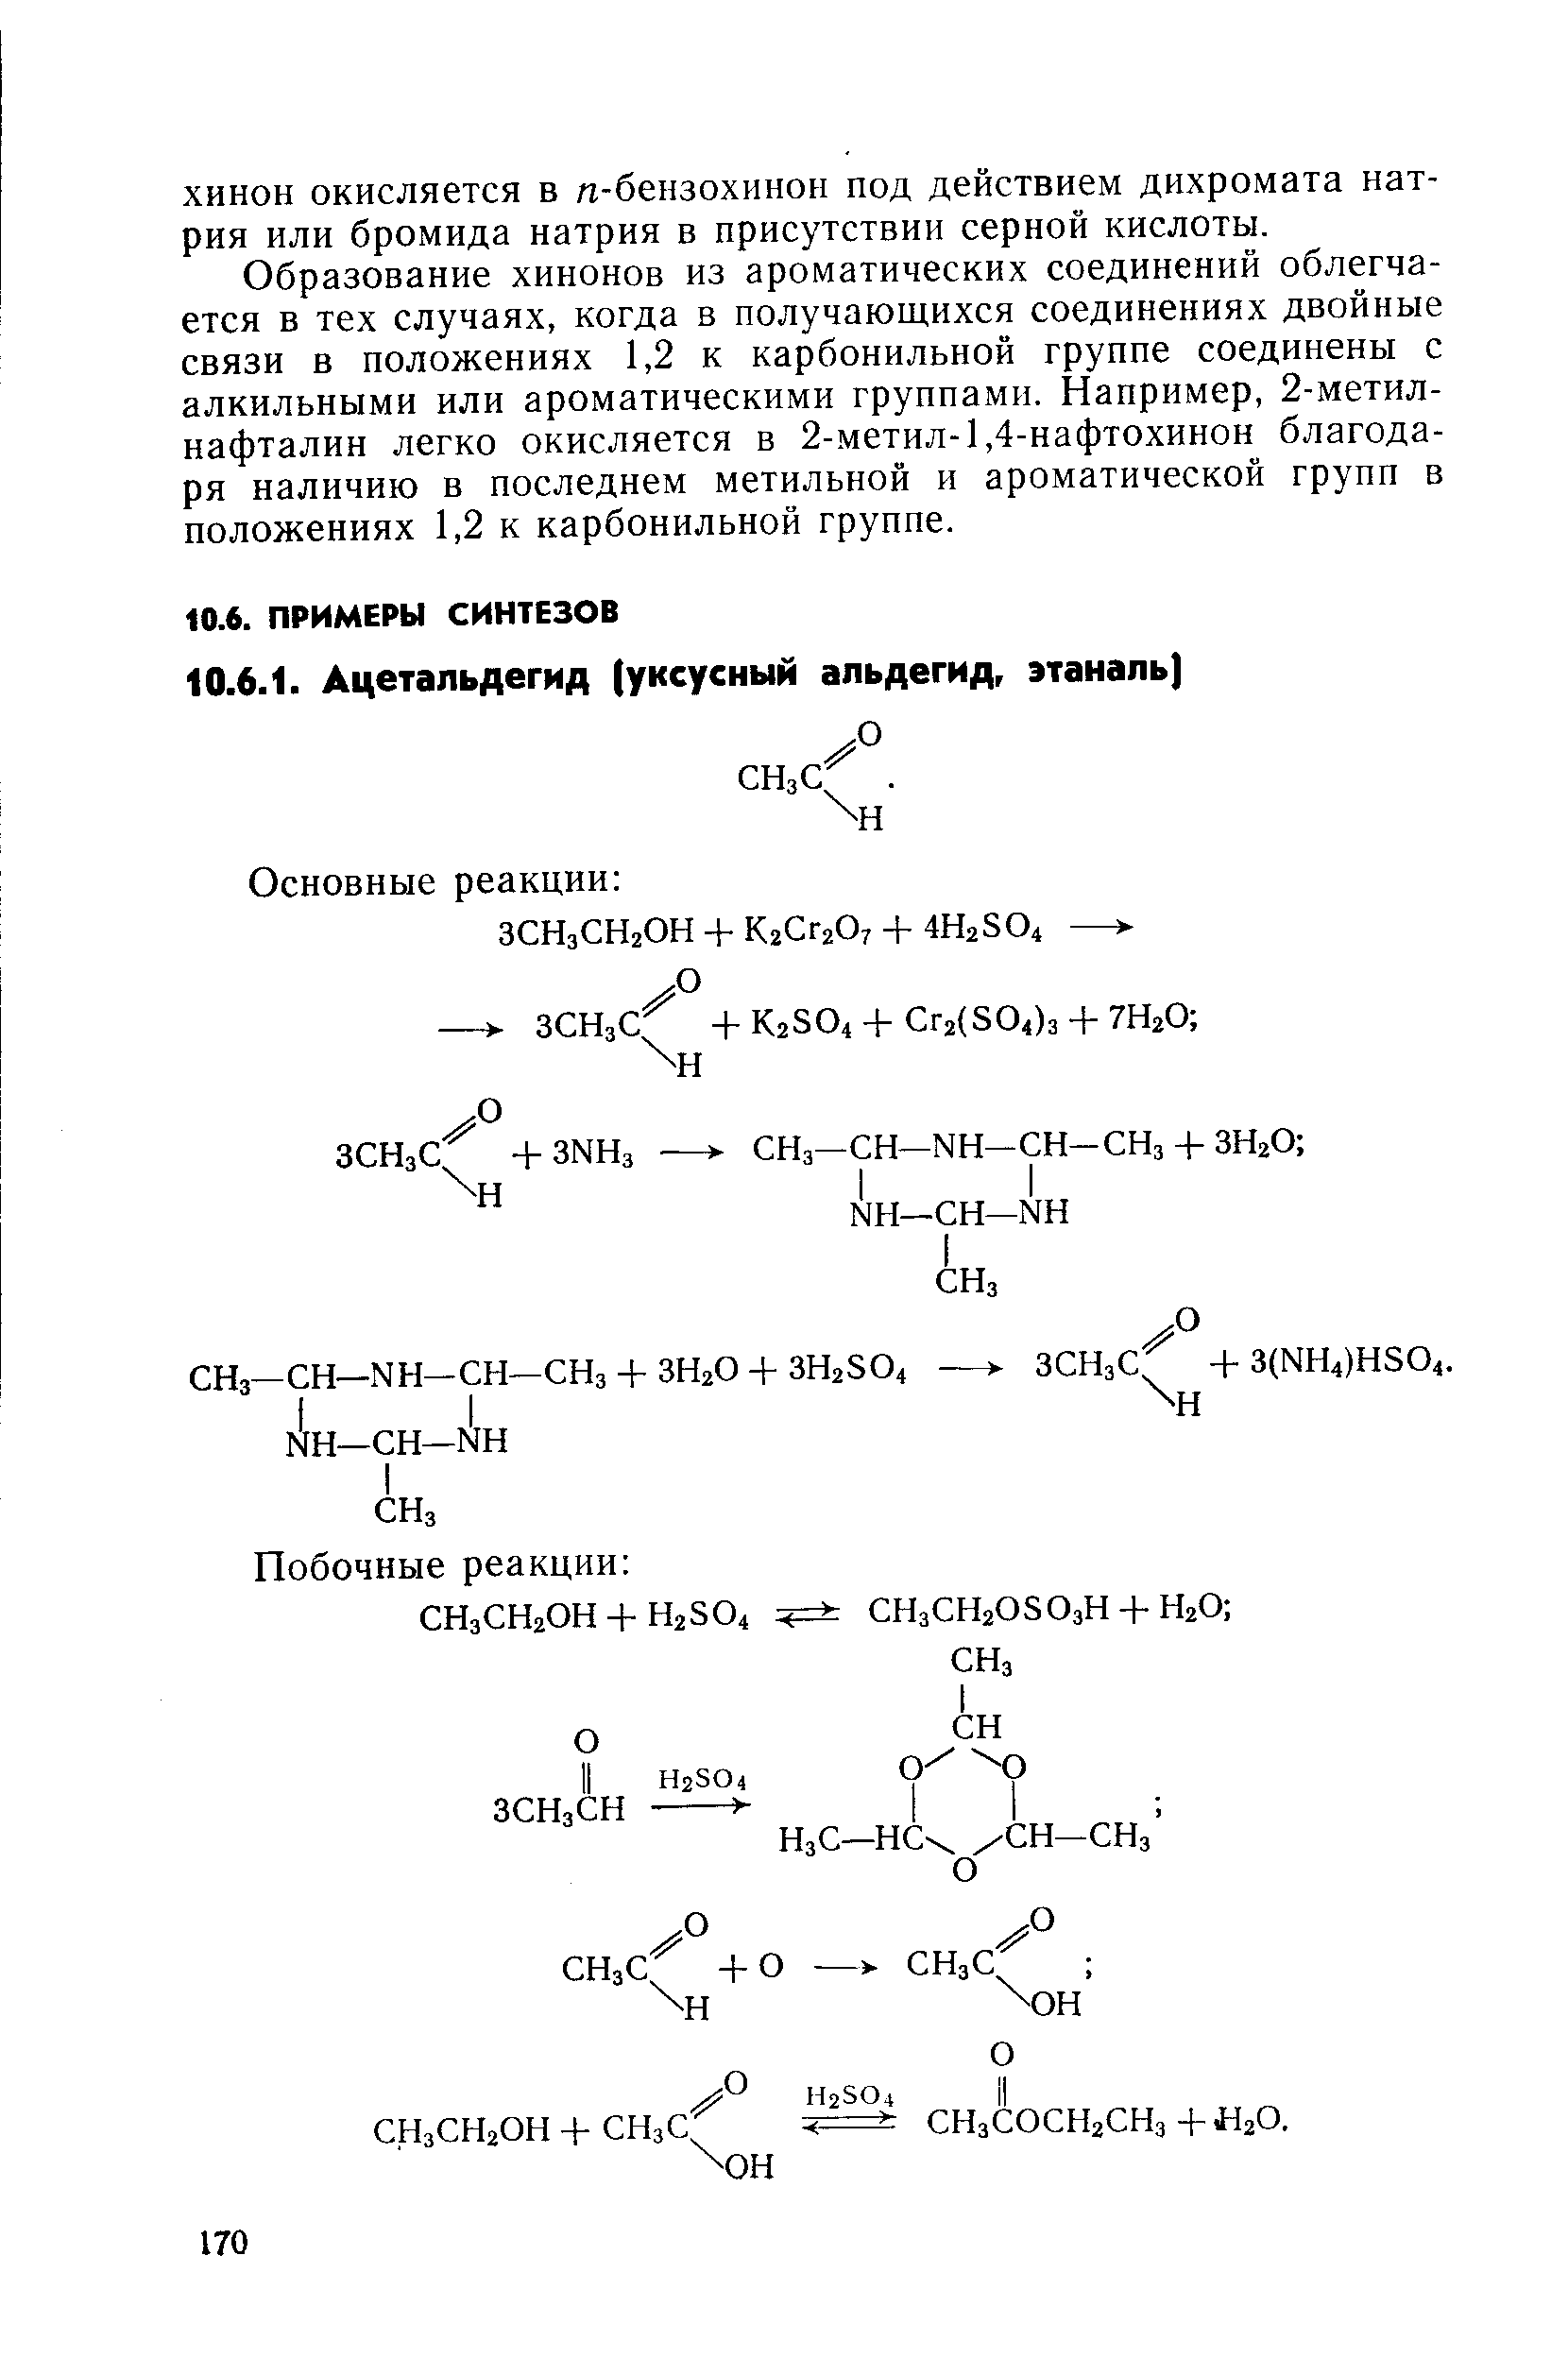 Образование хинонов из ароматических соединений облегчается в тех случаях, когда в получающихся соединениях двойные связи в положениях 1,2 к карбонильной группе соединены с алкильными или ароматическими группами. Например, 2-метил-нафталин легко окисляется в 2-метил-1,4-нафтохинон благодаря наличию в последнем метильной и ароматической групп в положениях 1,2 к карбонильной группе.